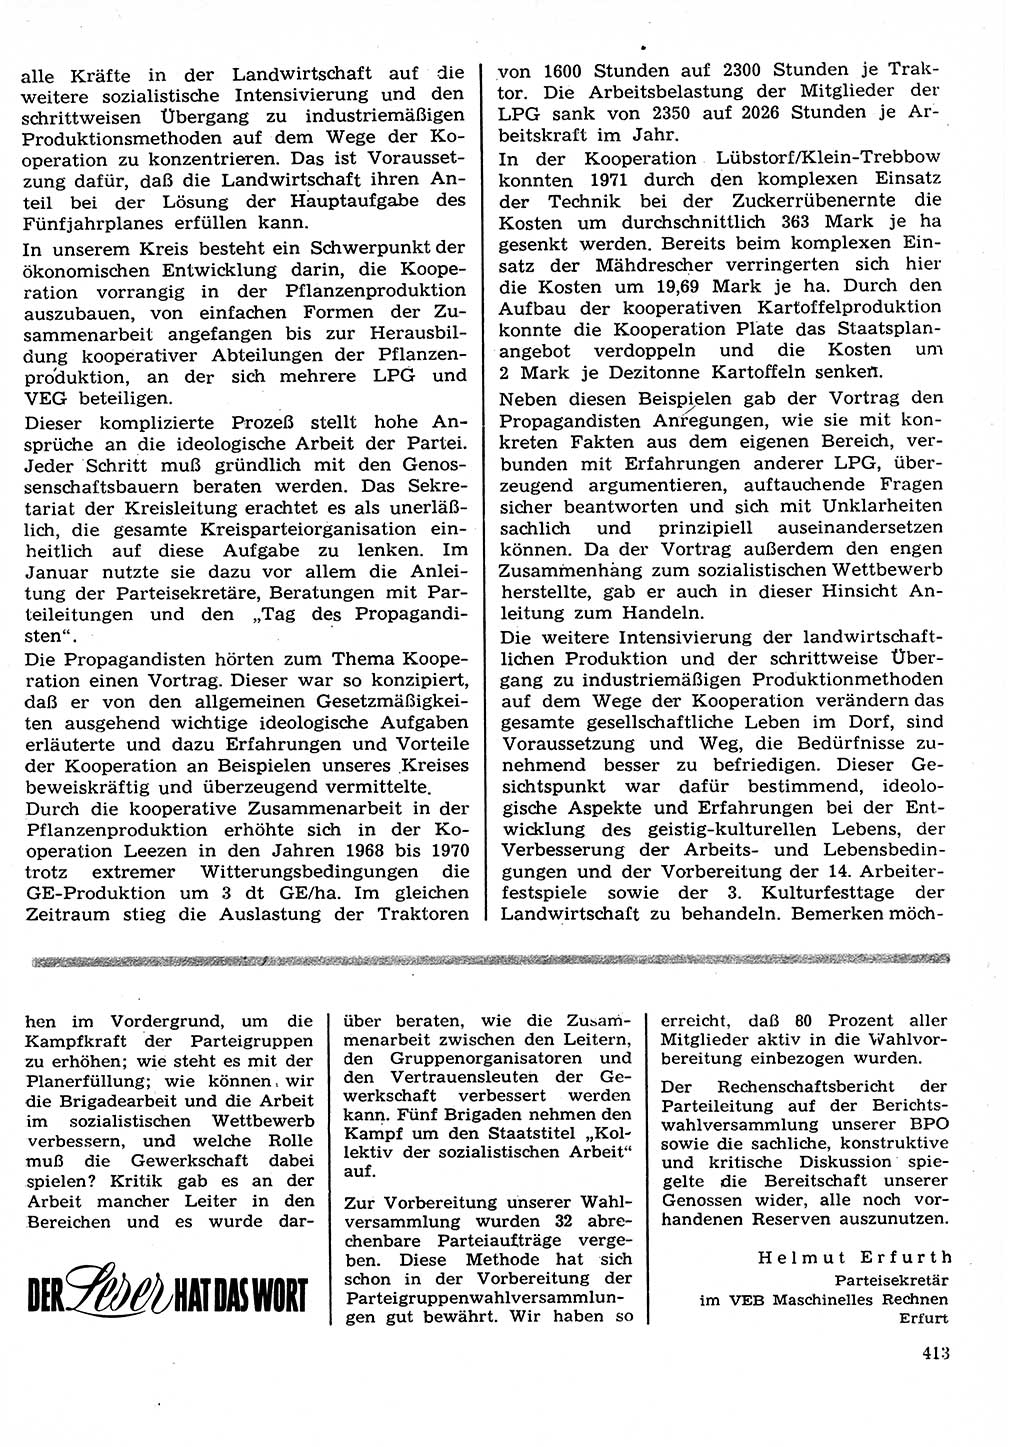 Neuer Weg (NW), Organ des Zentralkomitees (ZK) der SED (Sozialistische Einheitspartei Deutschlands) für Fragen des Parteilebens, 27. Jahrgang [Deutsche Demokratische Republik (DDR)] 1972, Seite 413 (NW ZK SED DDR 1972, S. 413)